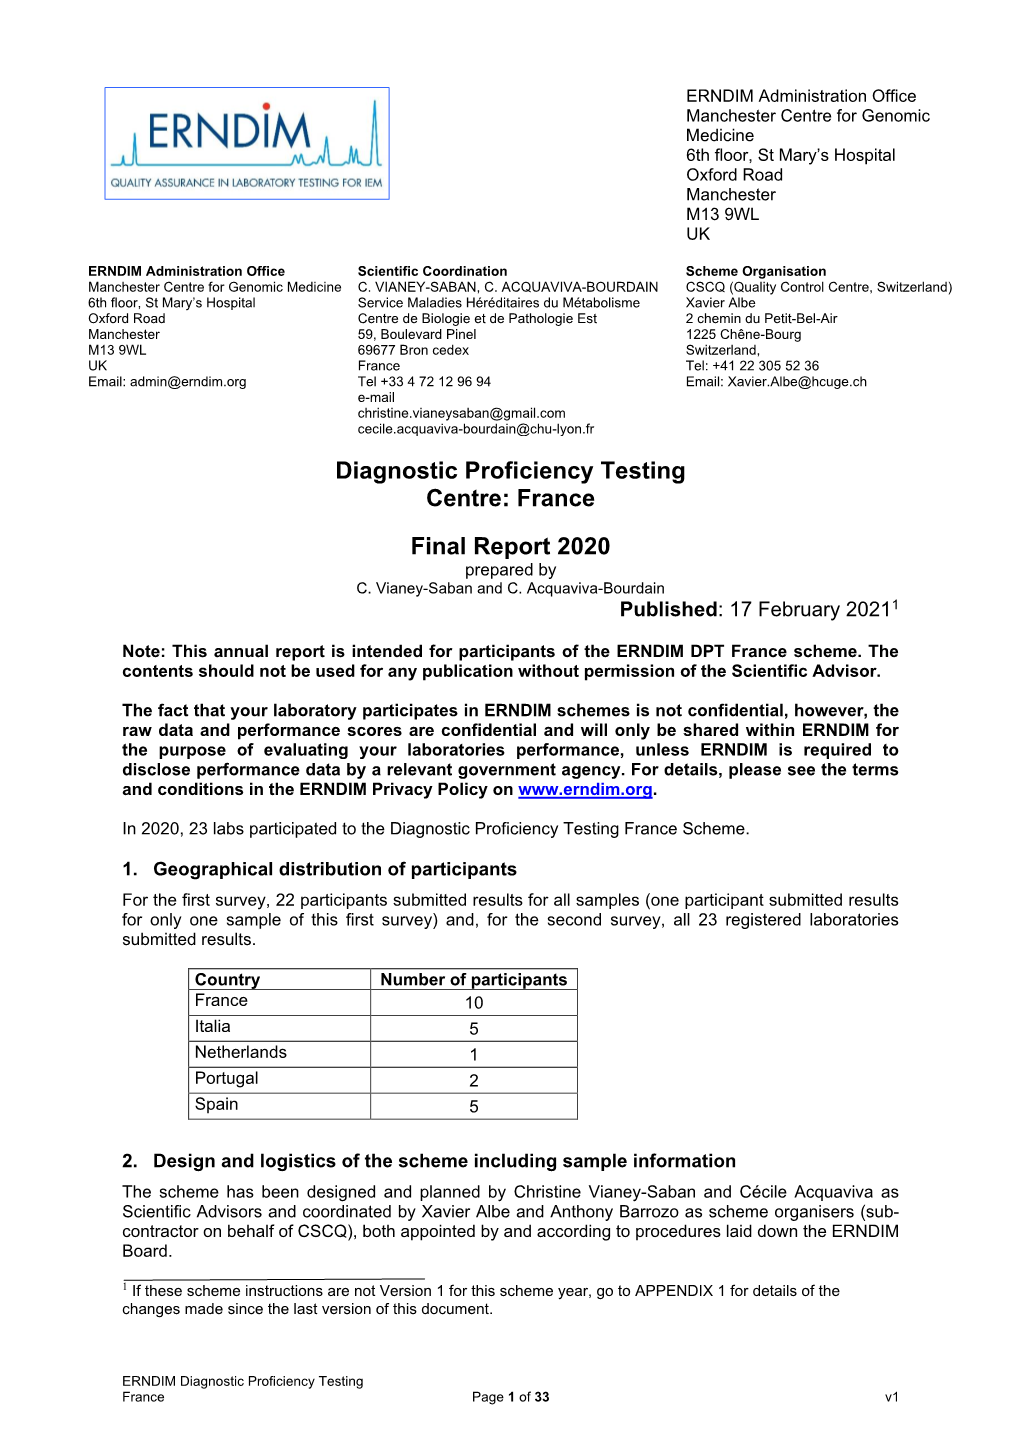 Diagnostic Proficiency Testing Centre: France Final